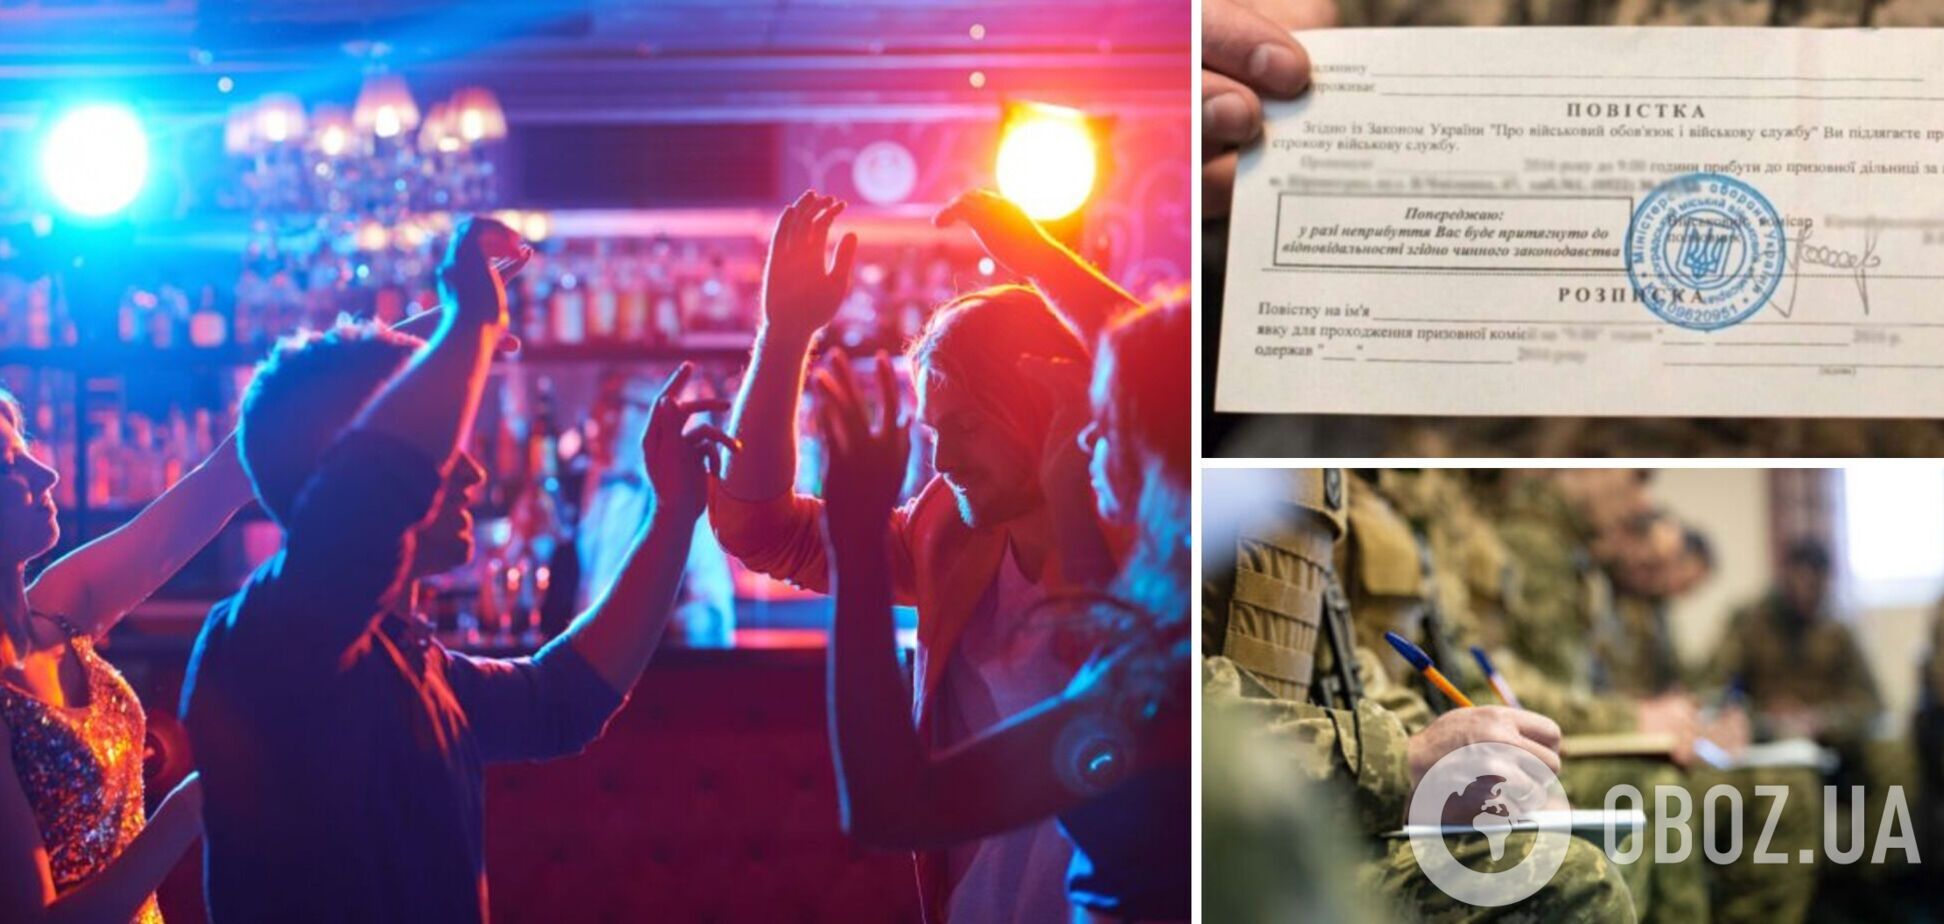 В Харькове военнослужащие 'посетили' ночной клуб, посетителям выписали повестки. Видео